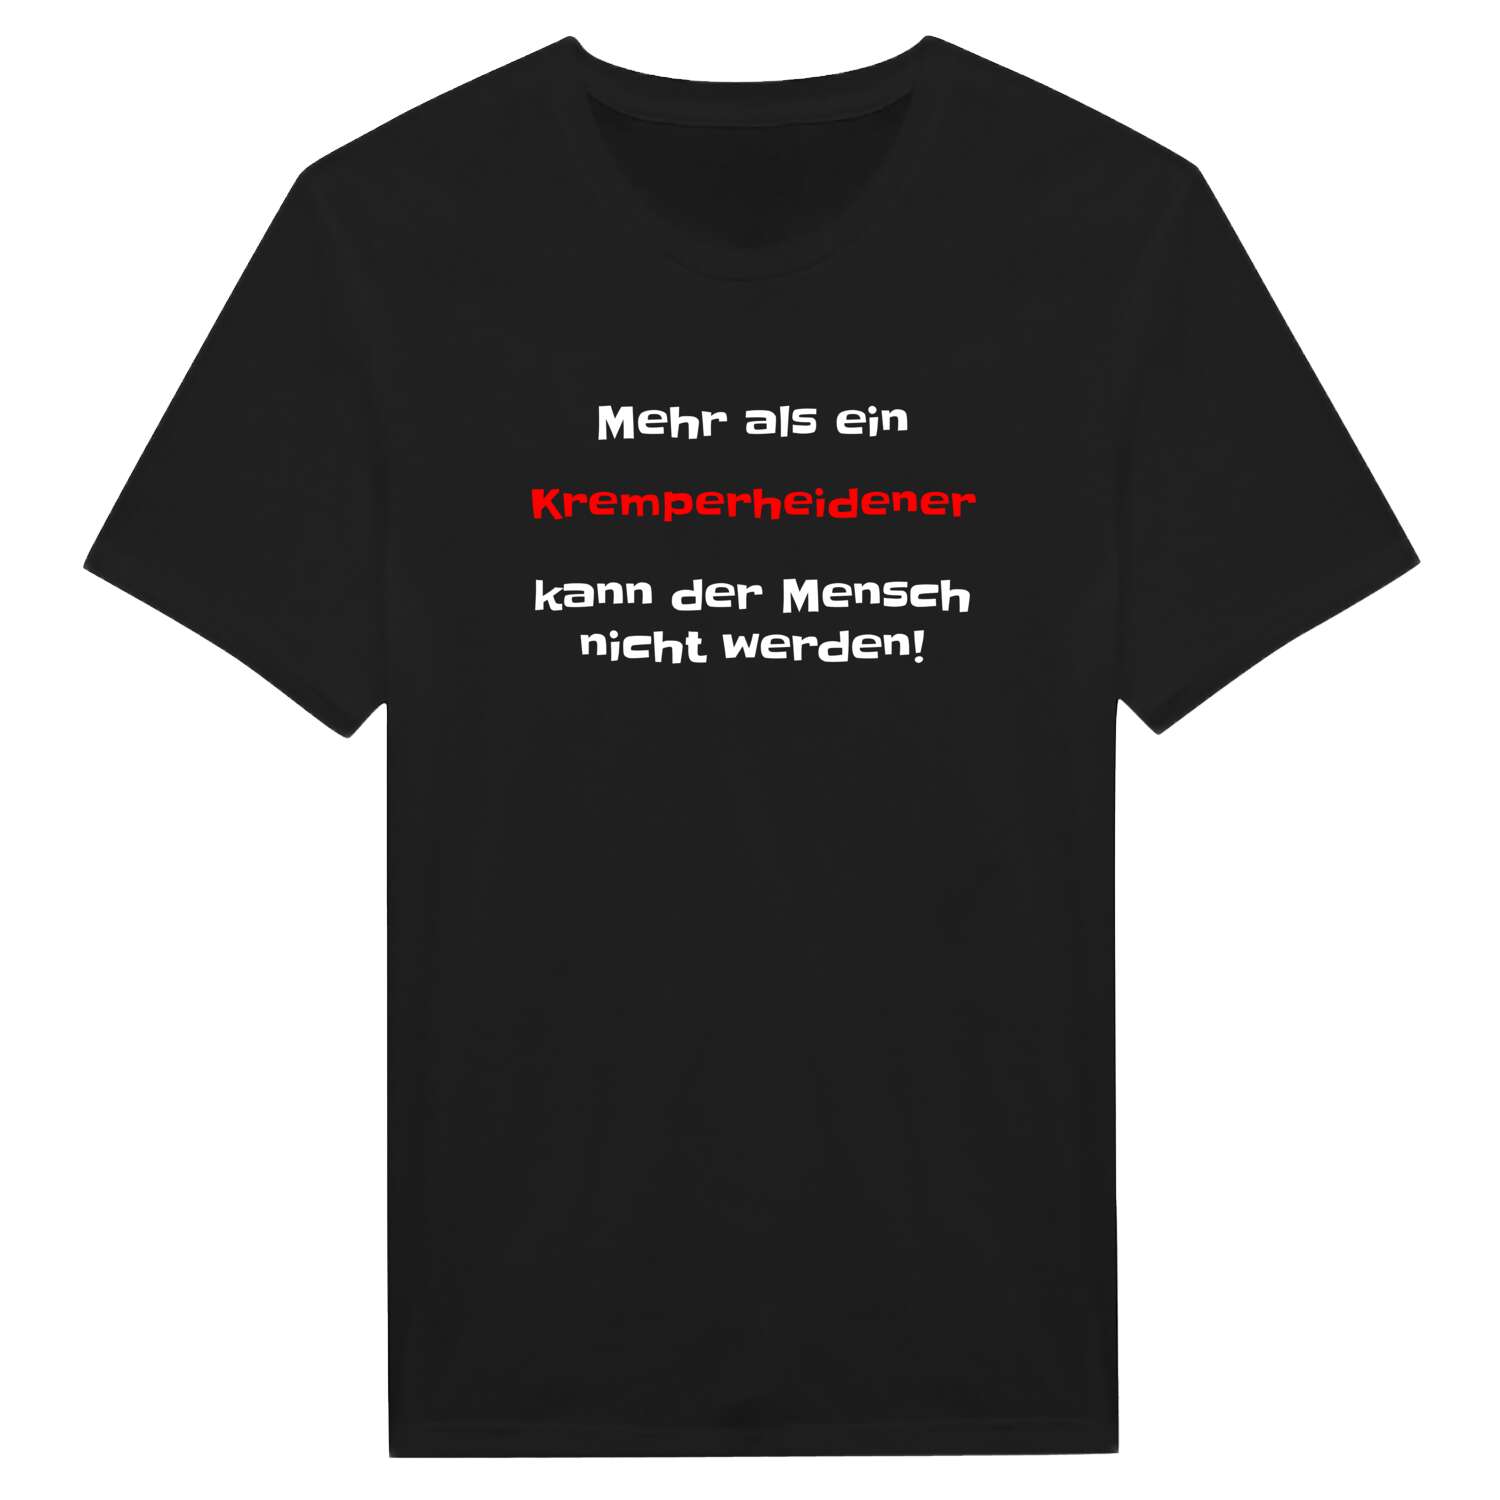 Kremperheide T-Shirt »Mehr als ein«